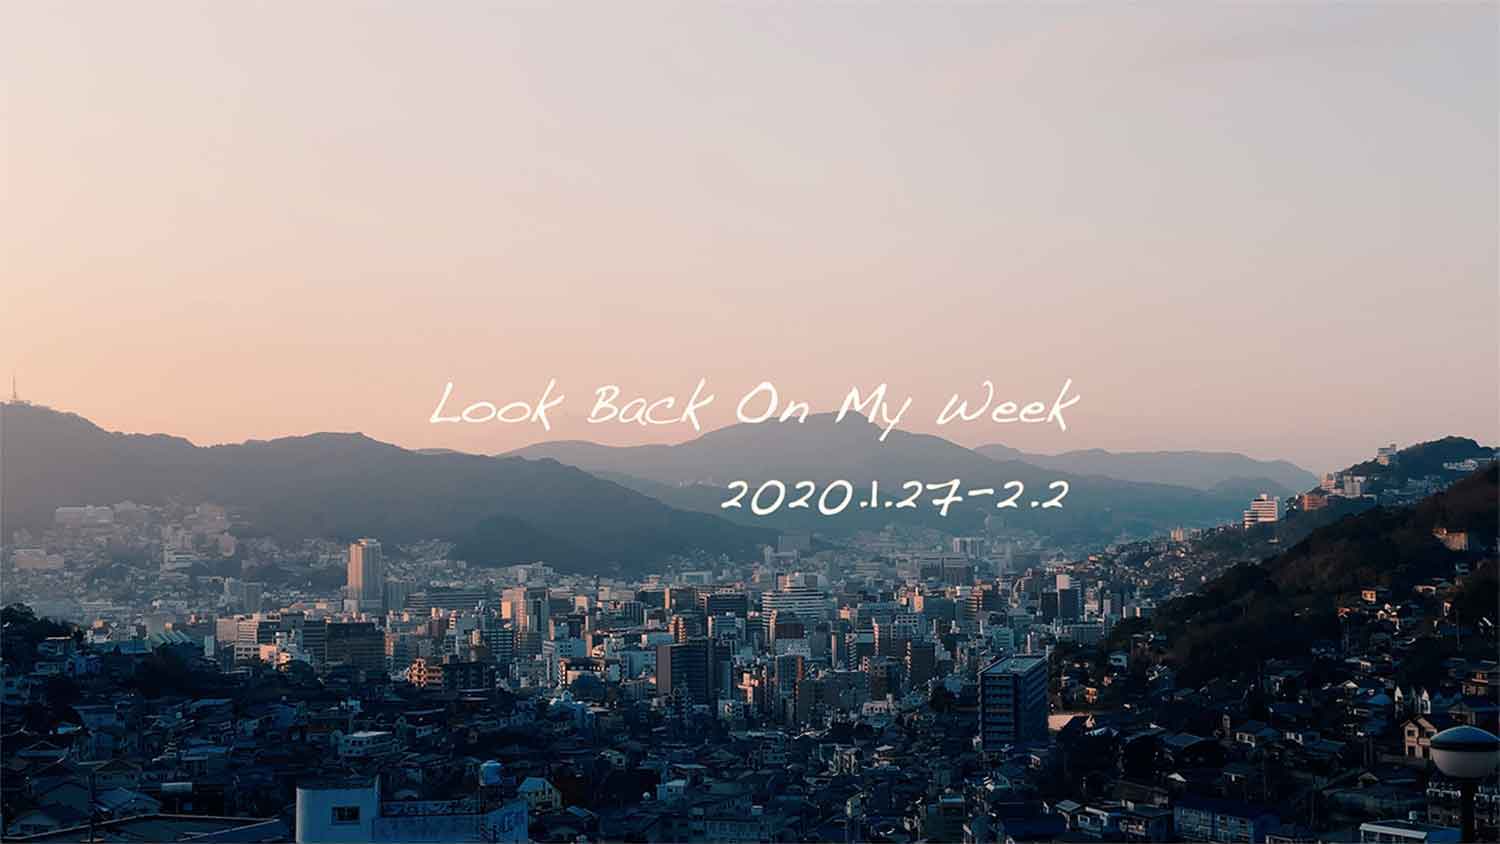 Look-Back-On-My-Week｜2020.1.27-2.2